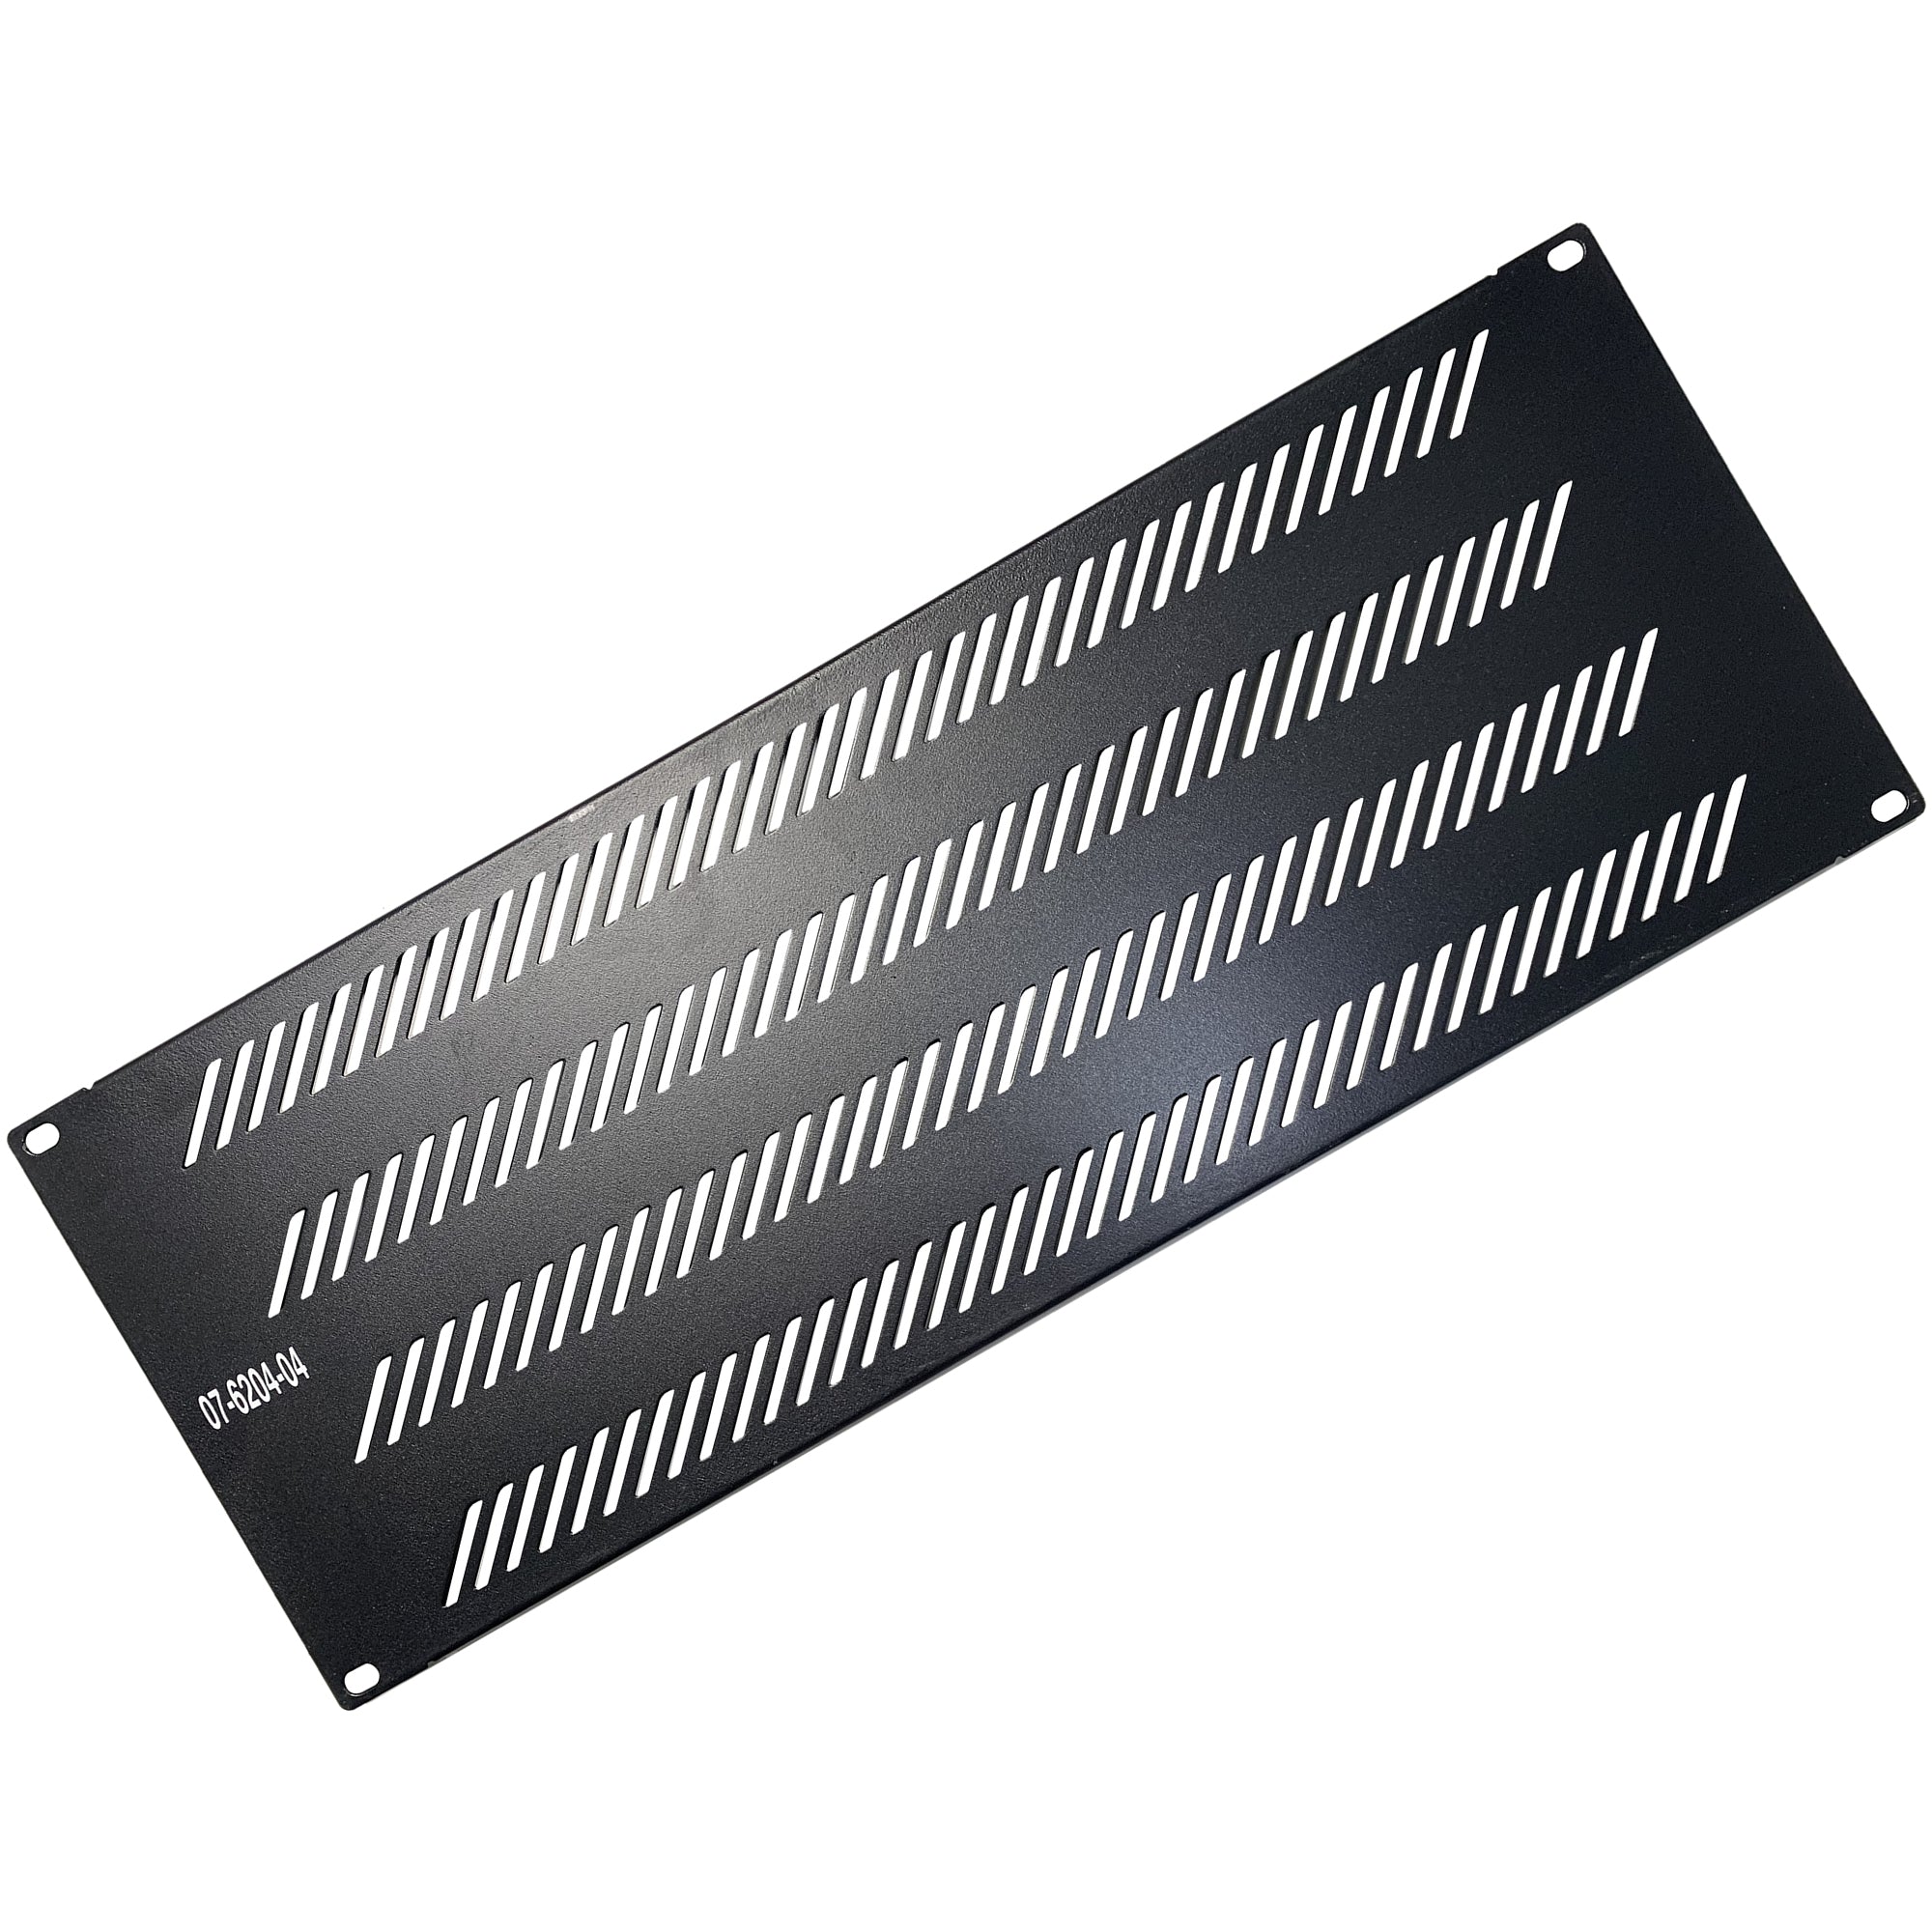 07-6204-04 Blank Filler Panel with Ventilation - 4U - Black Color